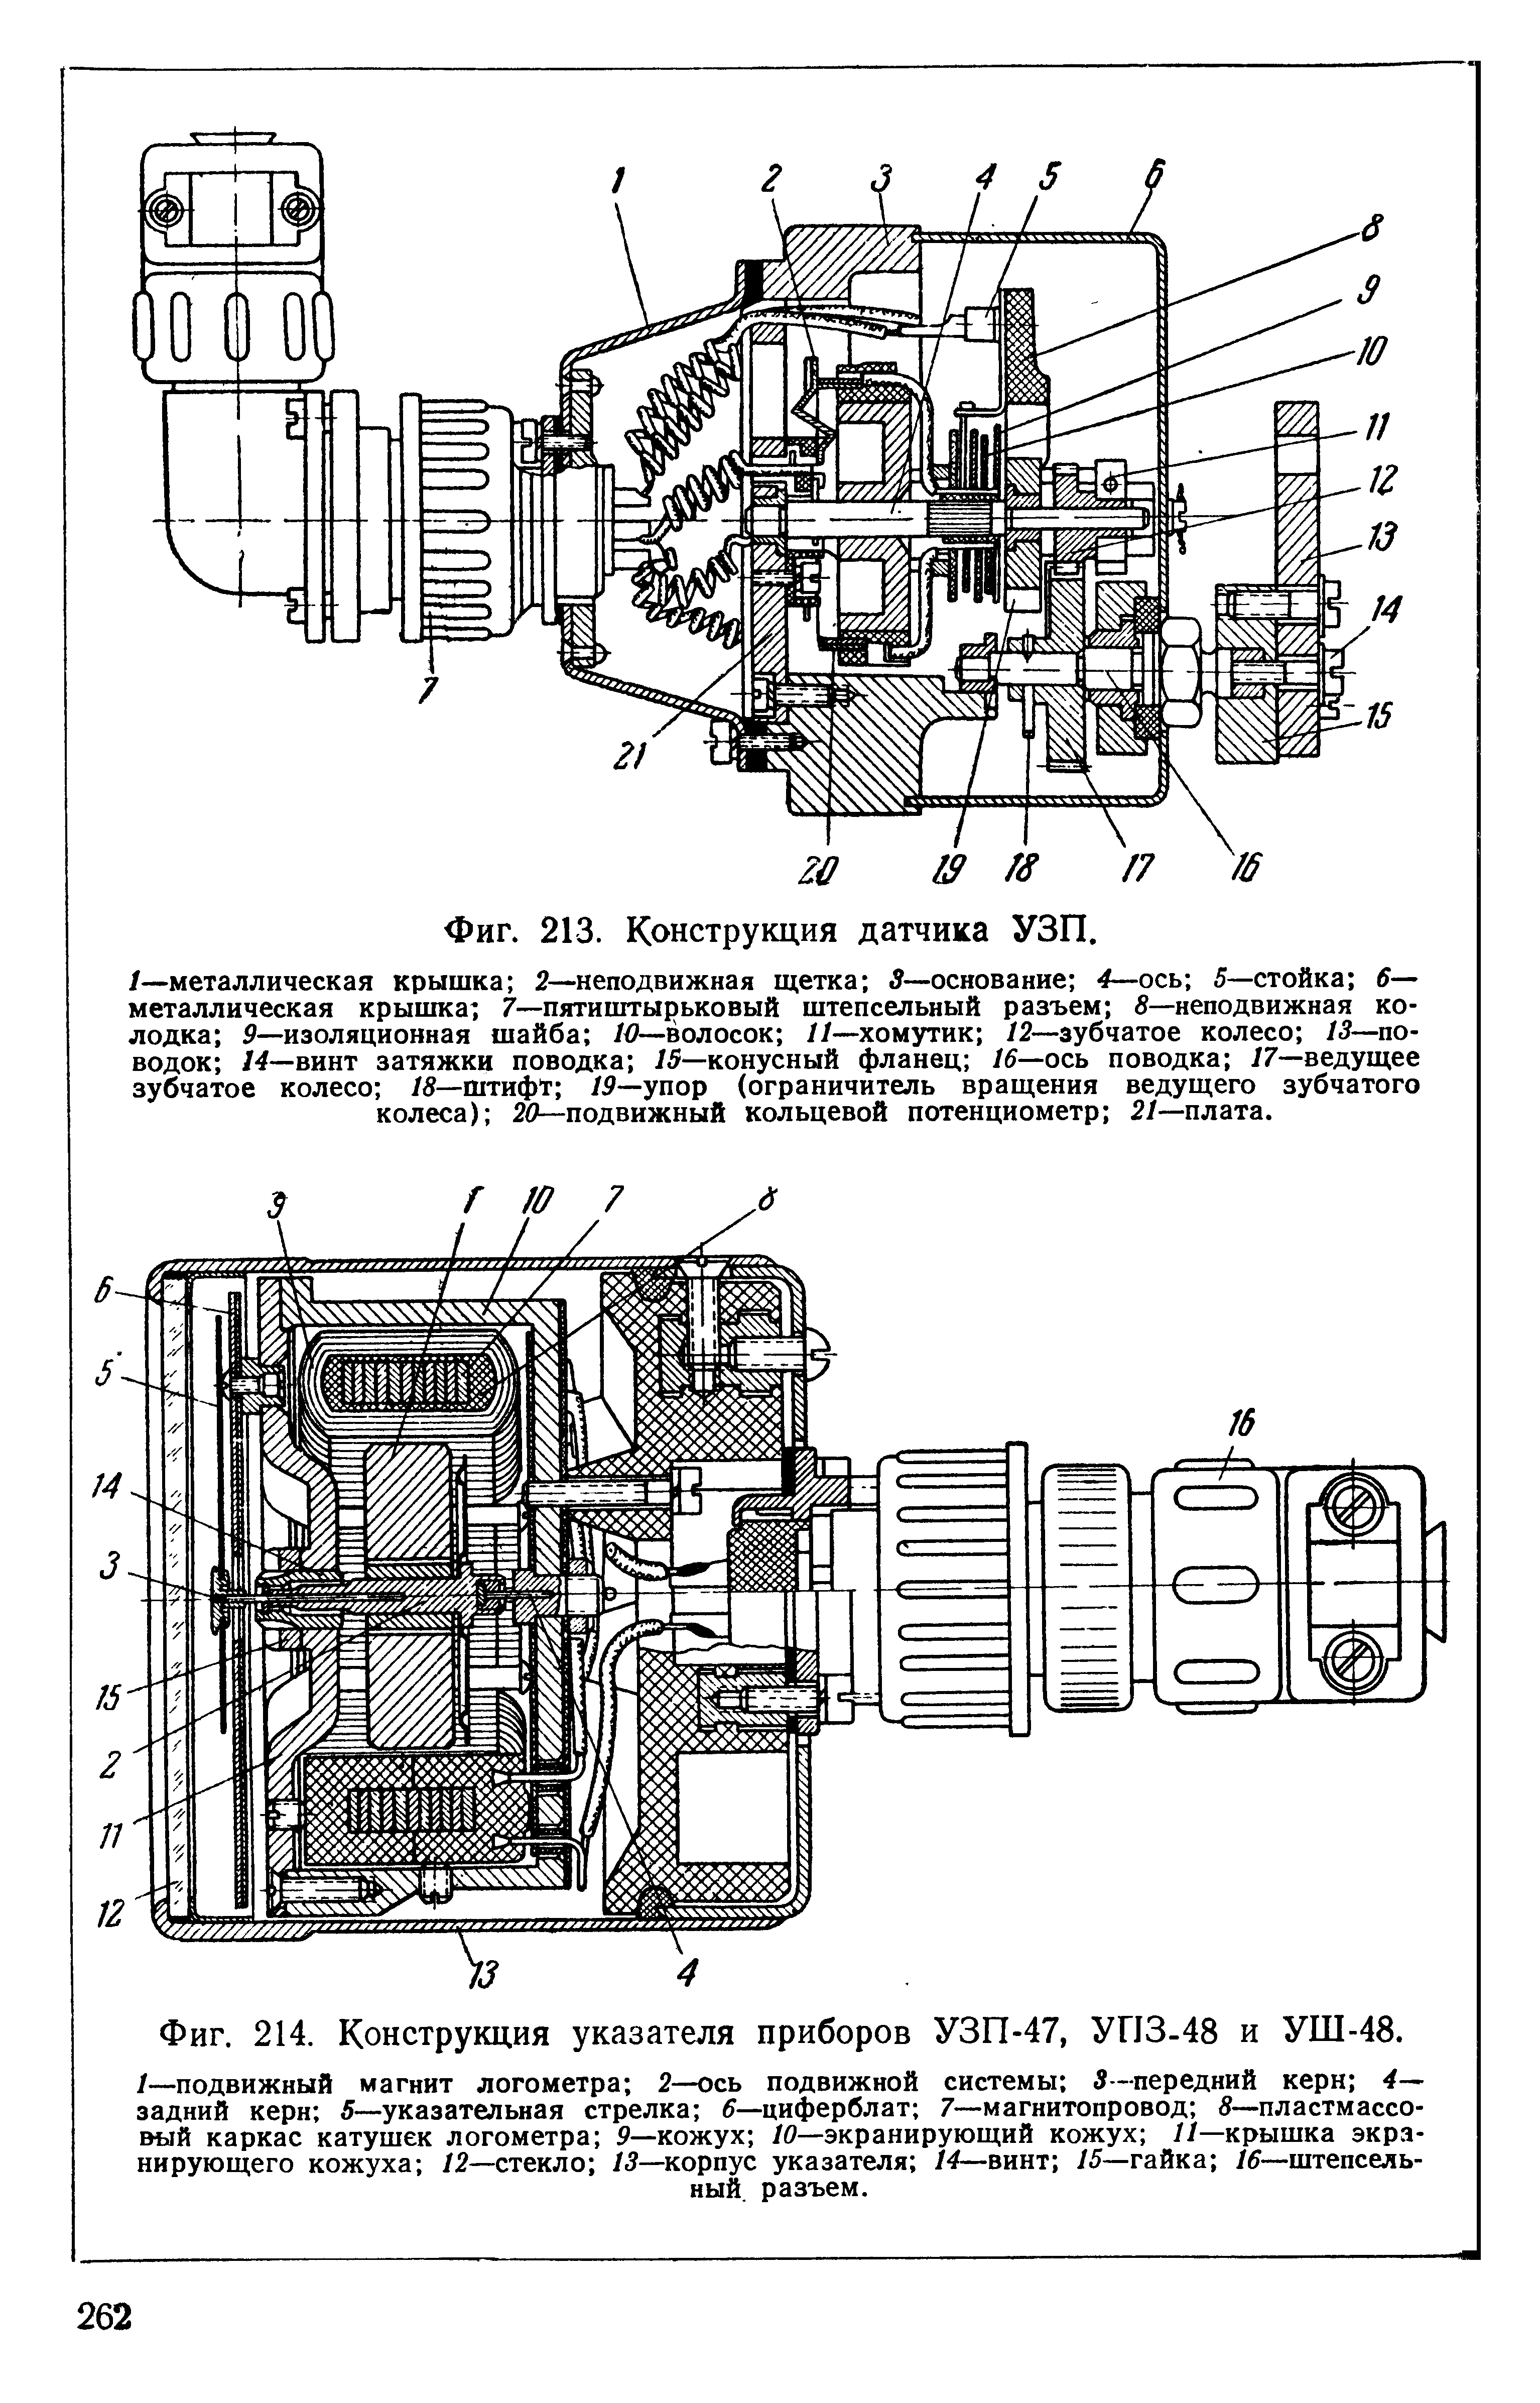 Фиг. 214. Конструкция указателя приборов УЗП-47, УПЗ-48 и УШ-48.
